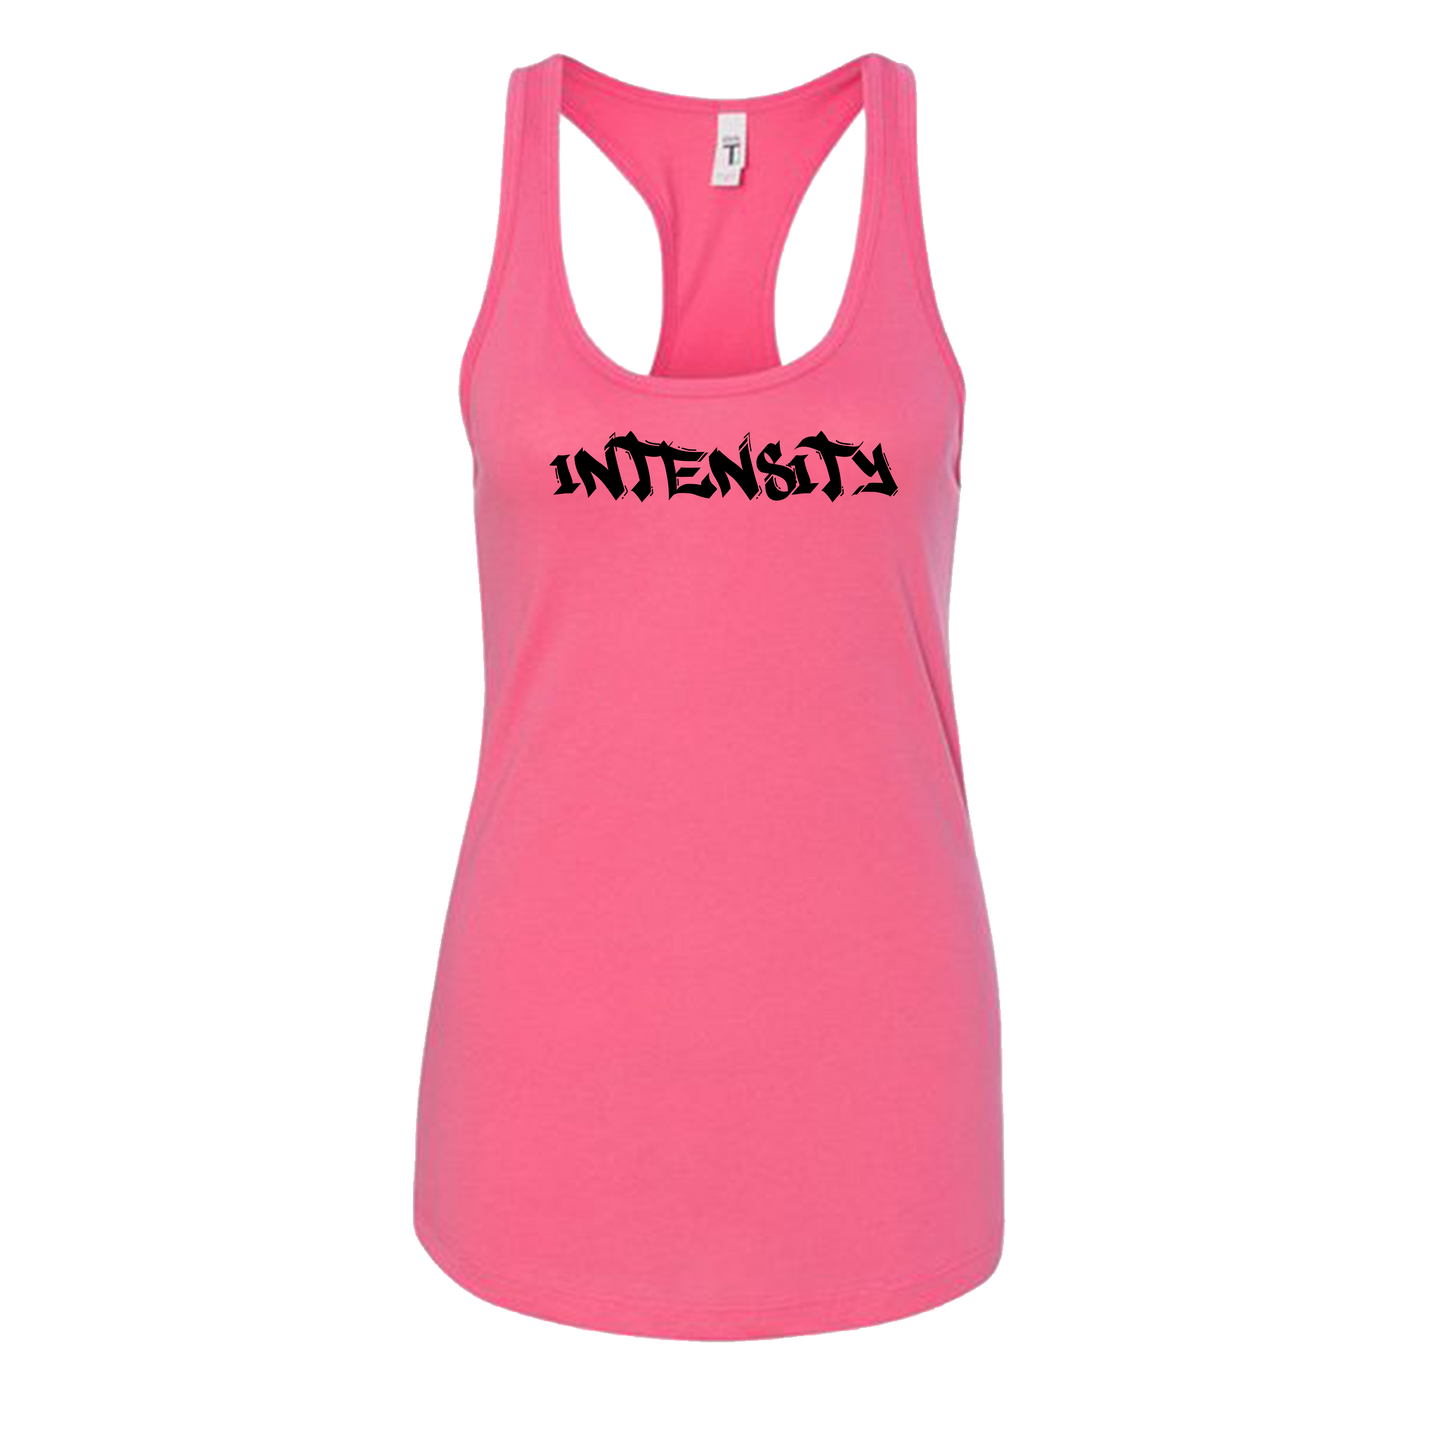 Women's "INTENSITY" Solid Hot Pink Women's Tank Top